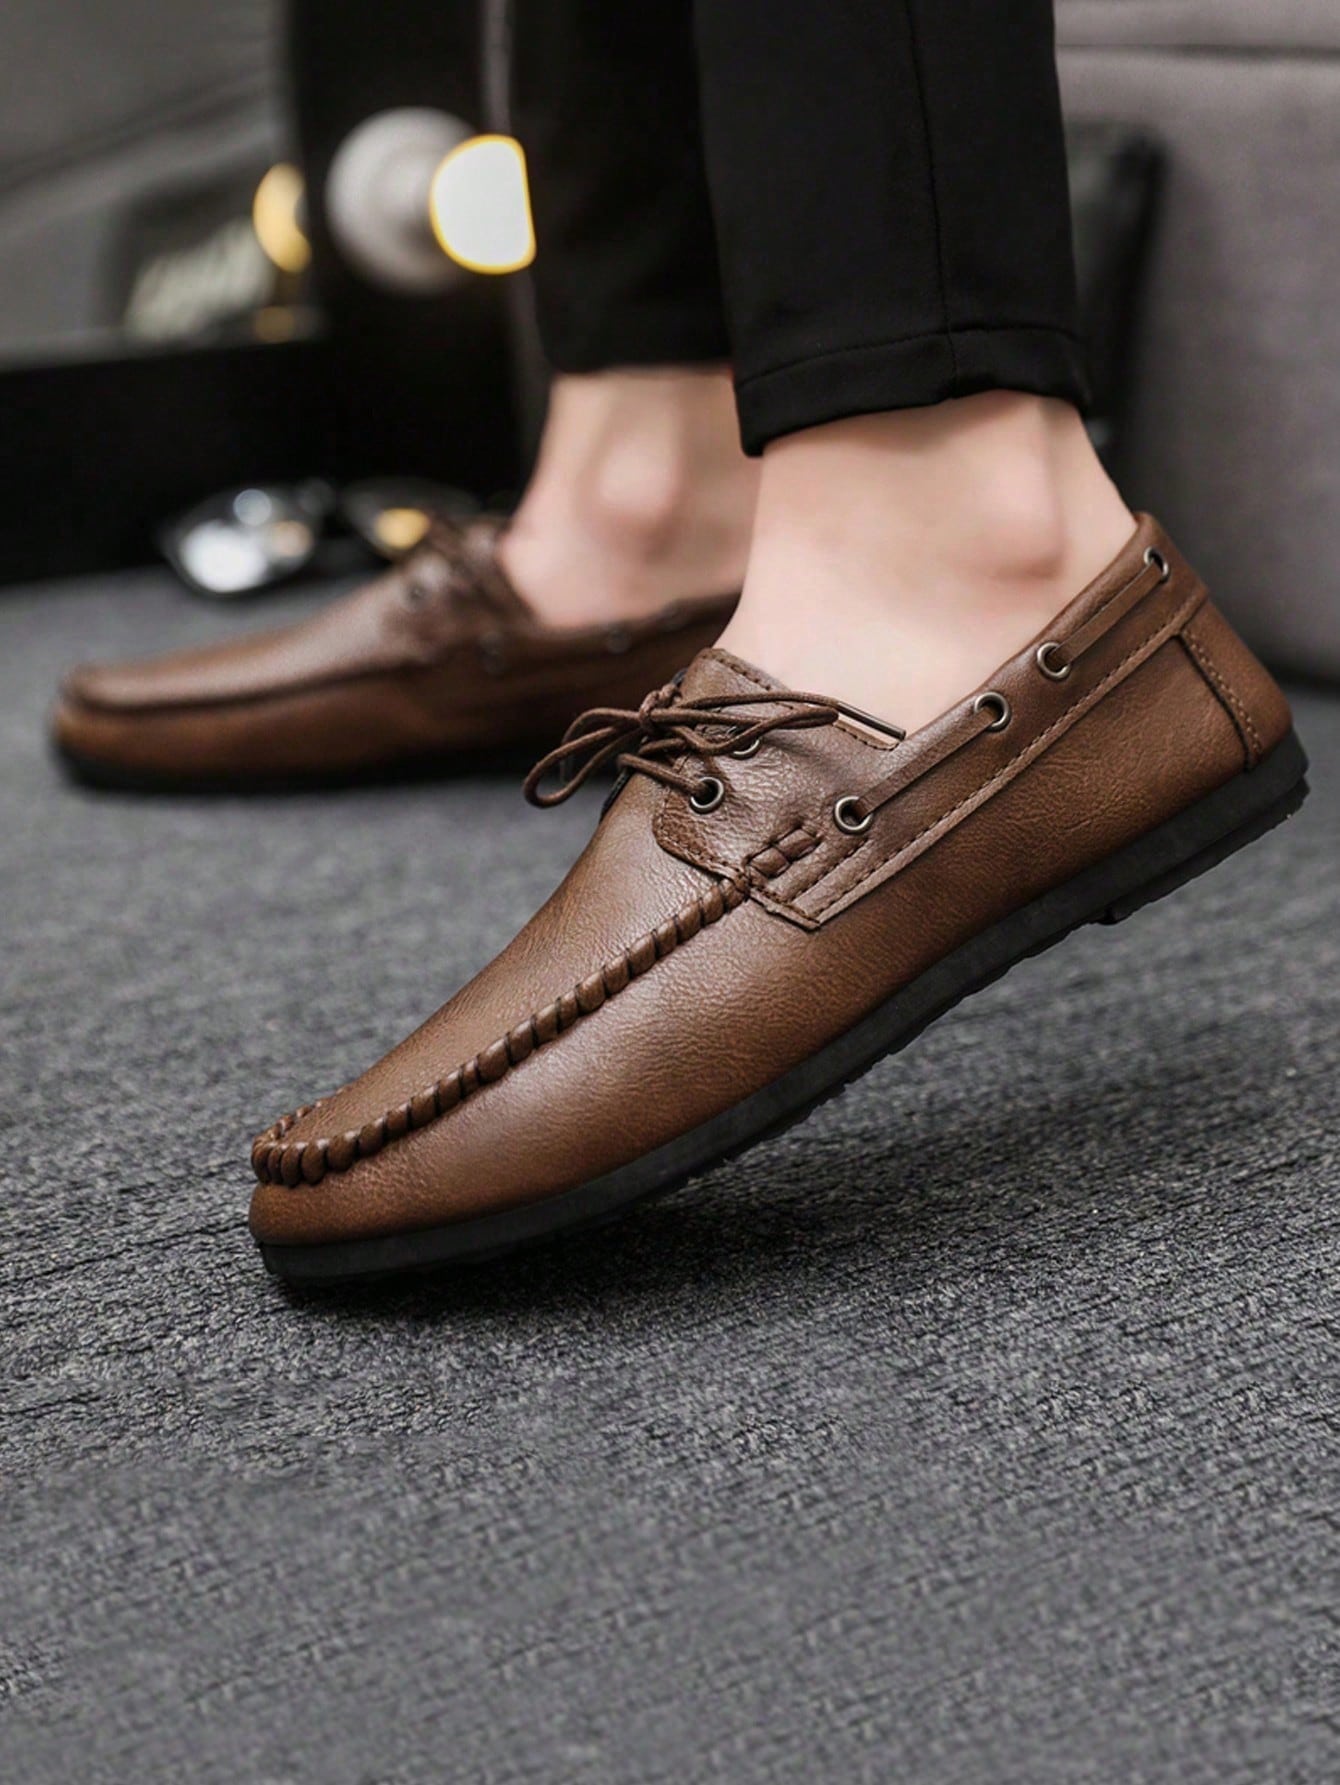 Официальные повседневные кожаные туфли в британском стиле на шнуровке для мужчин, коричневый мужские деловые кожаные туфли в корейском стиле повседневные свадебные туфли в британском стиле с острым носком весна cb059